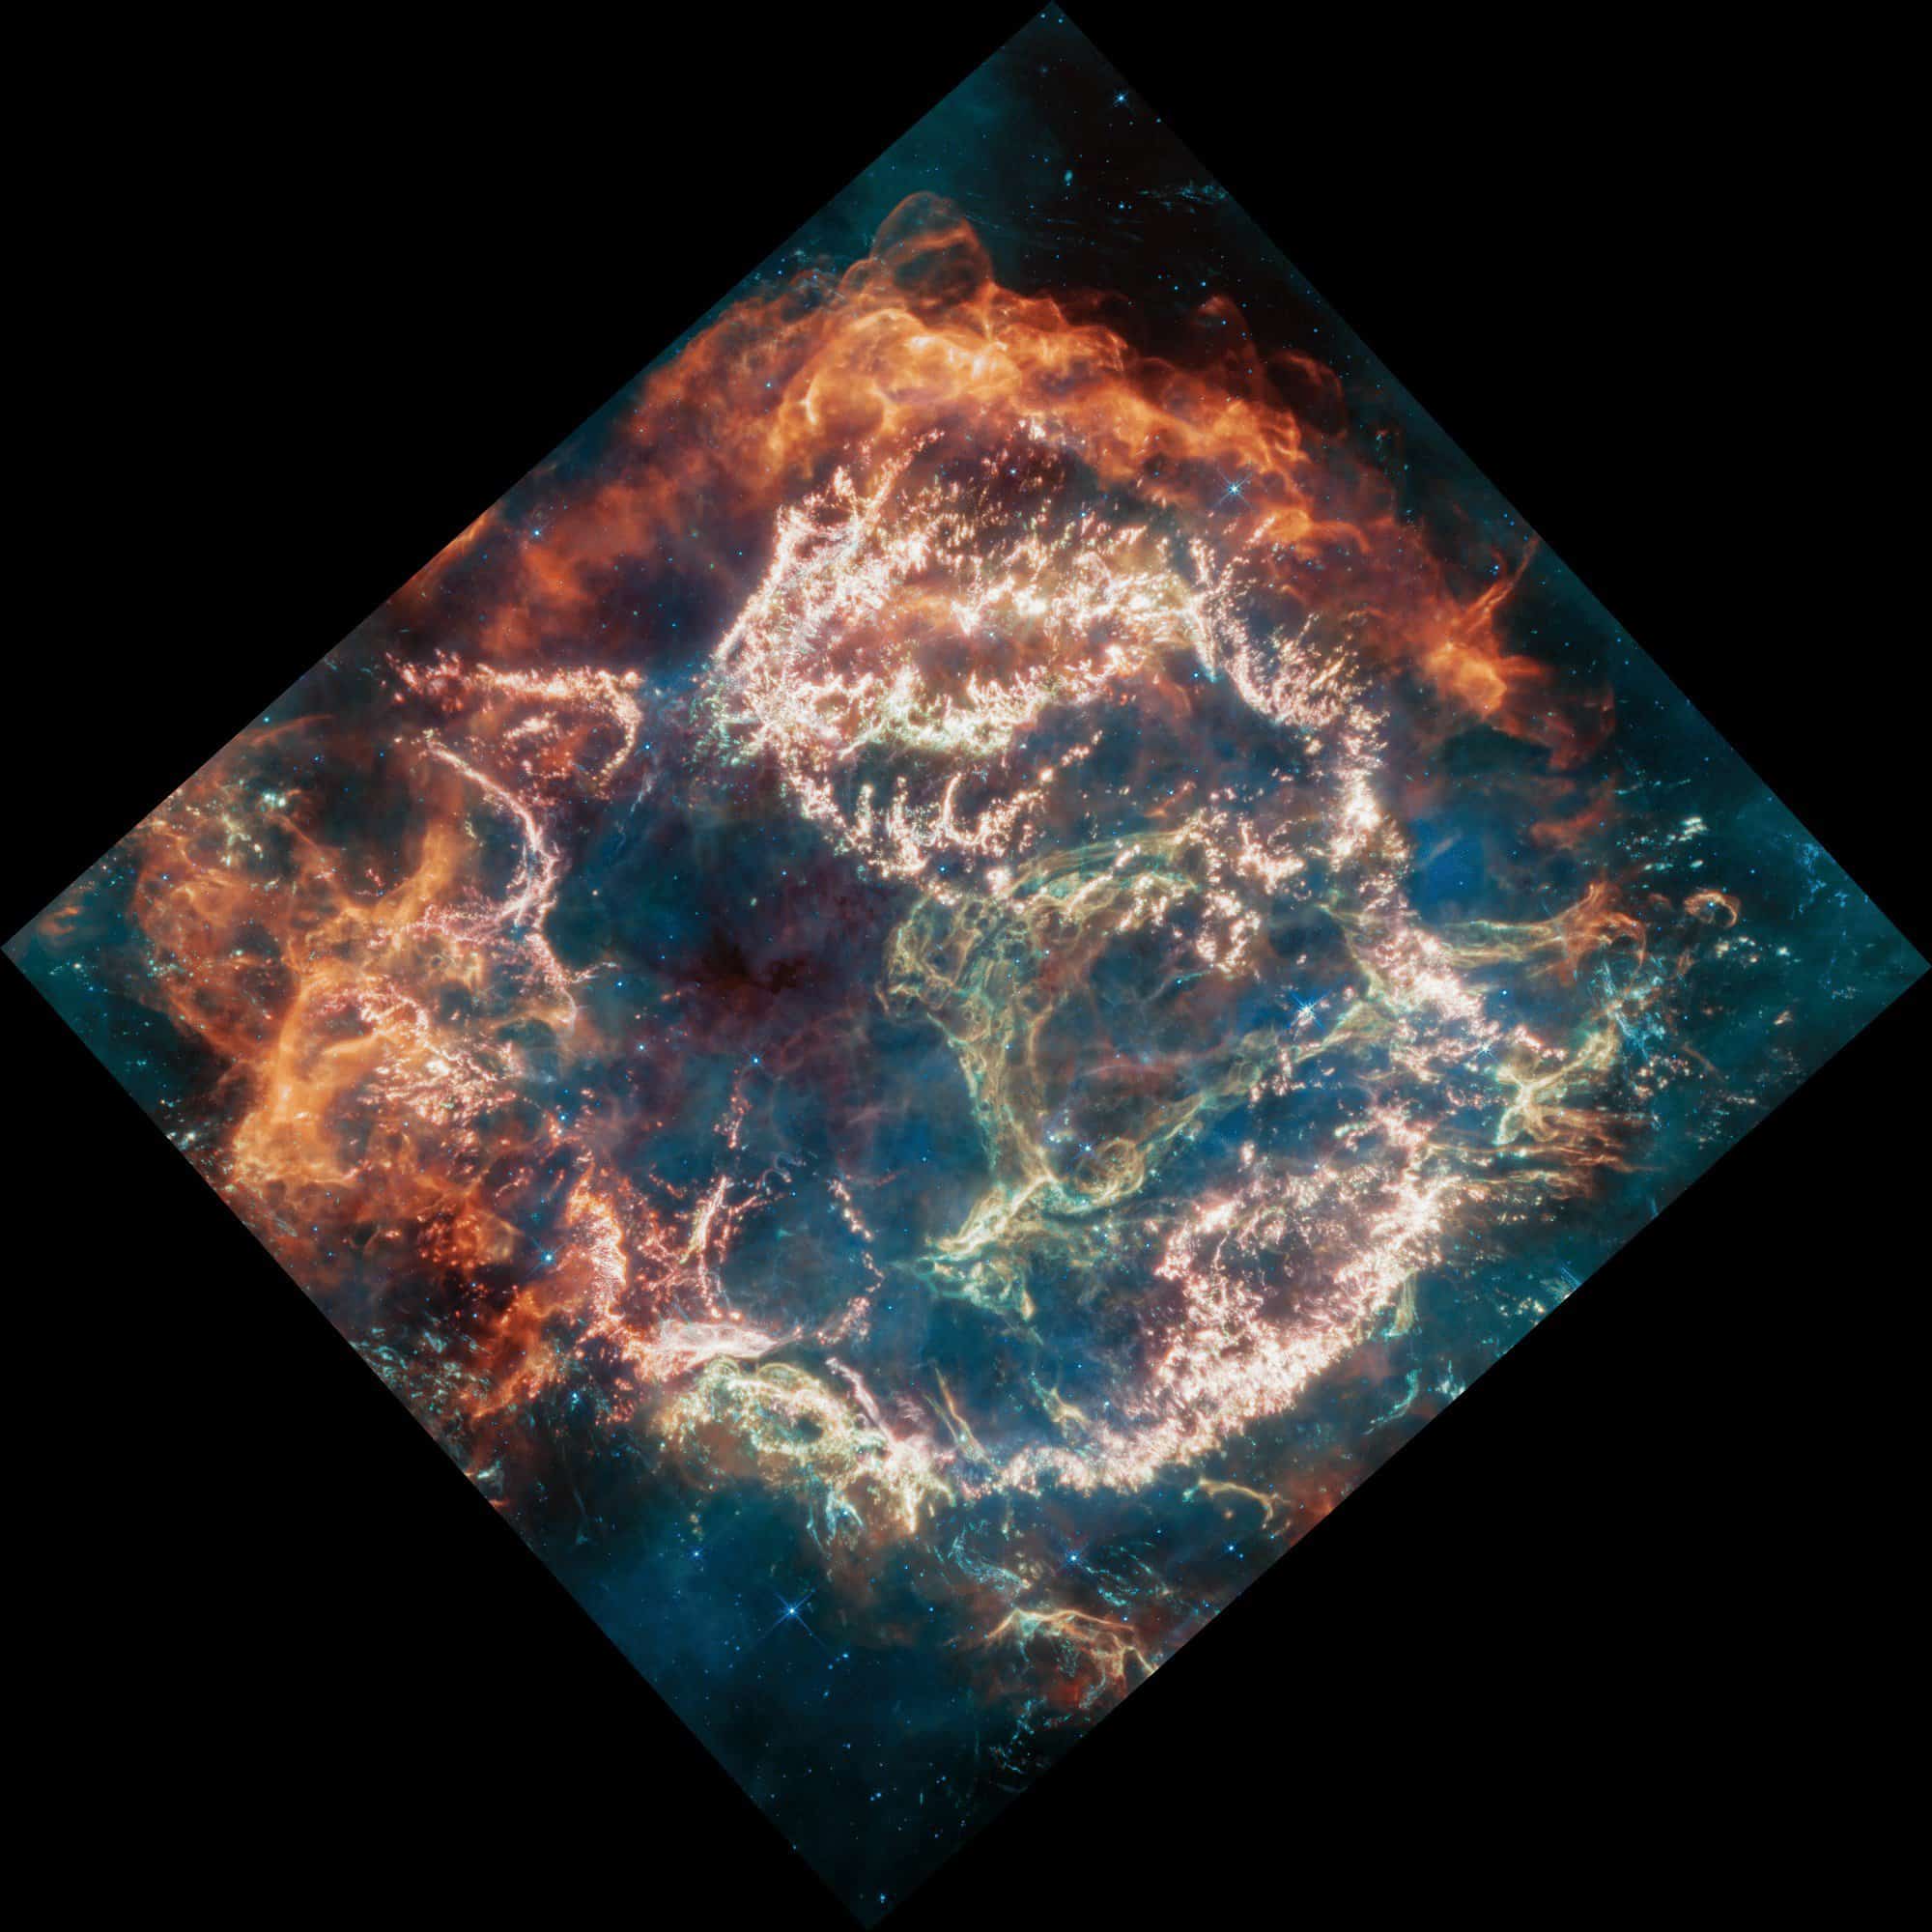 NASAのウェッブ望遠鏡、超新星をかつてないほど詳細にとらえた